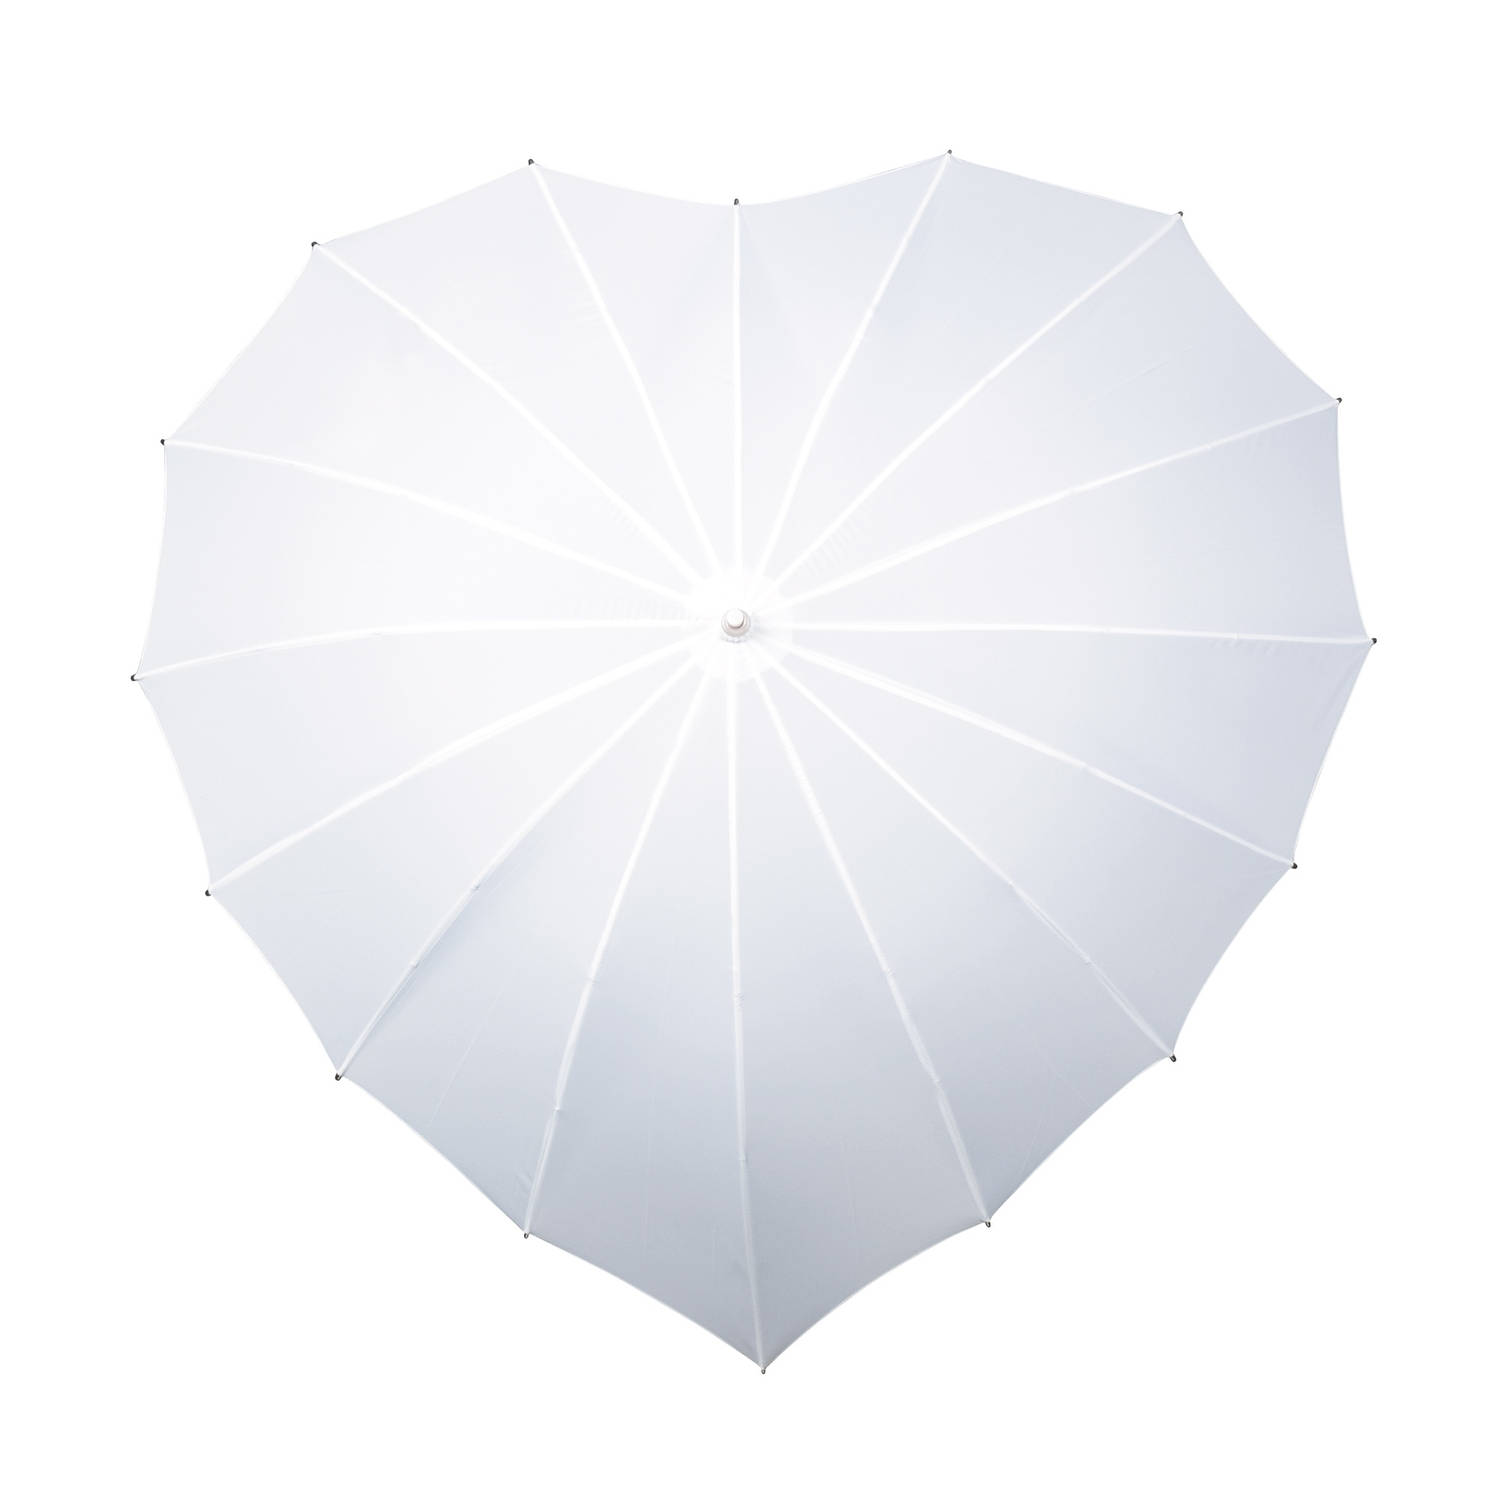 Componeren Persona Antipoison Impliva paraplu hartvormig handopening 110 cm wit | Blokker